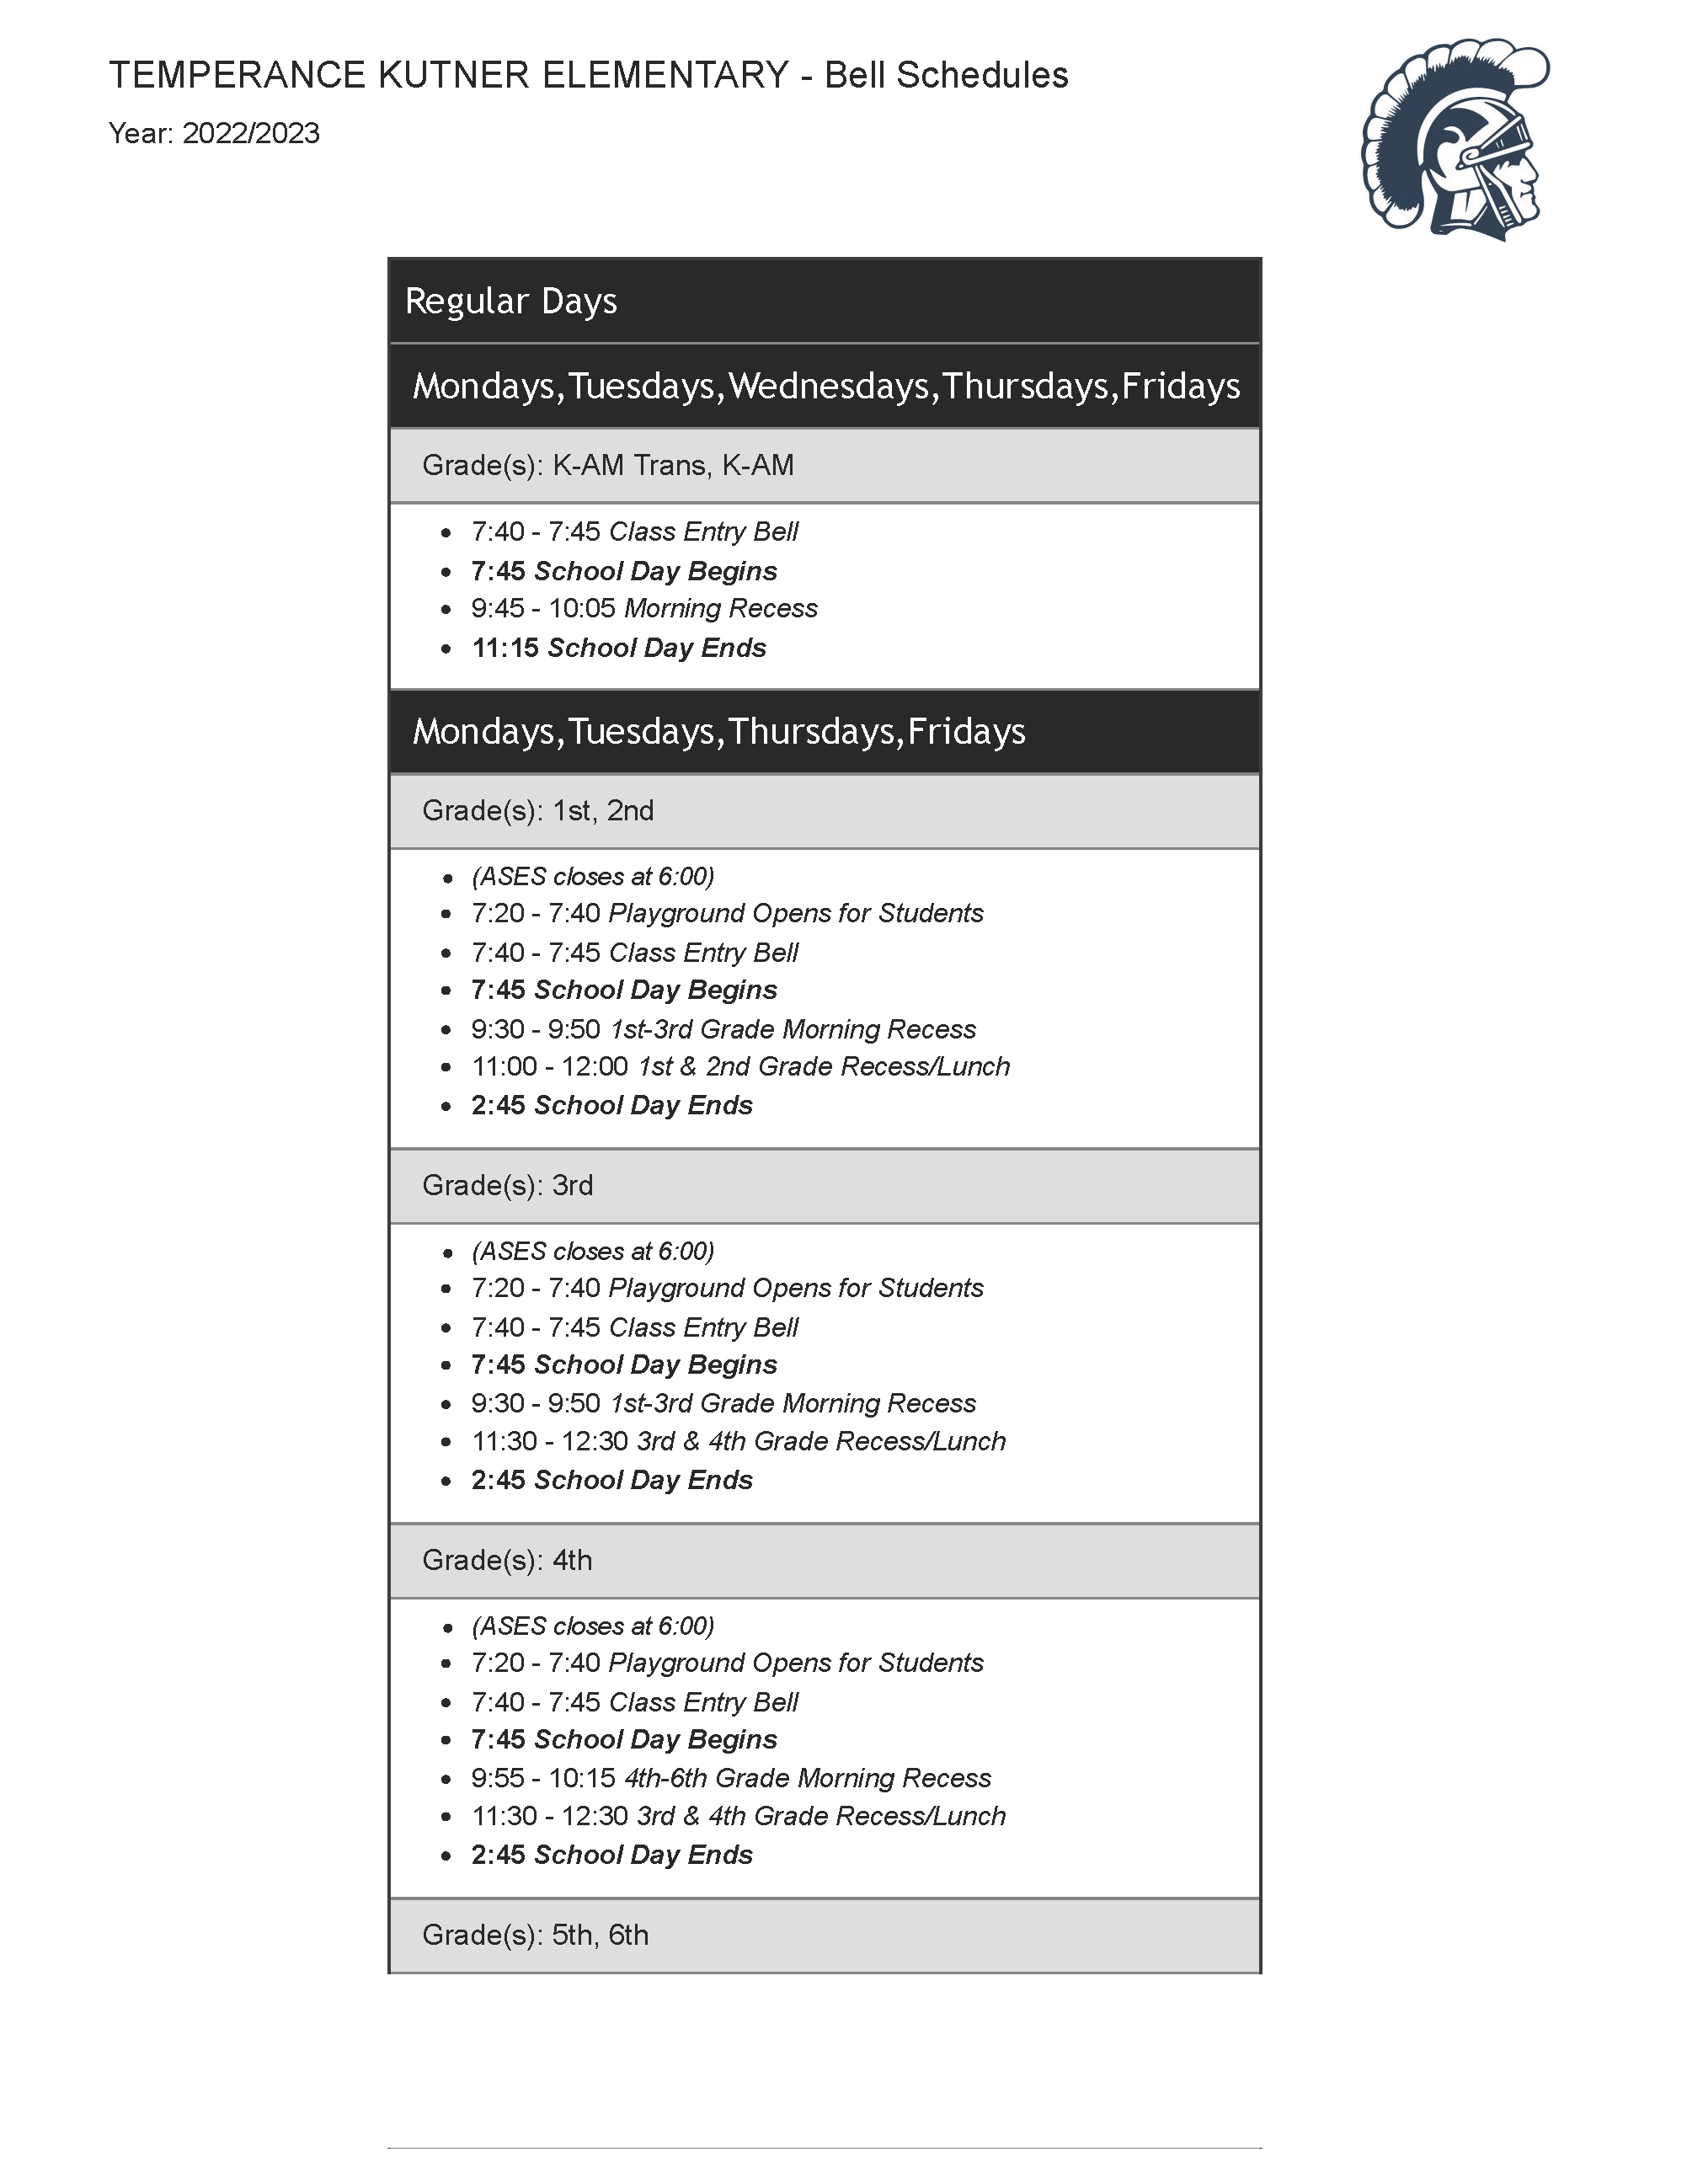 2022-23 Temperance Kutner Bell Schedule - full text downloadable below